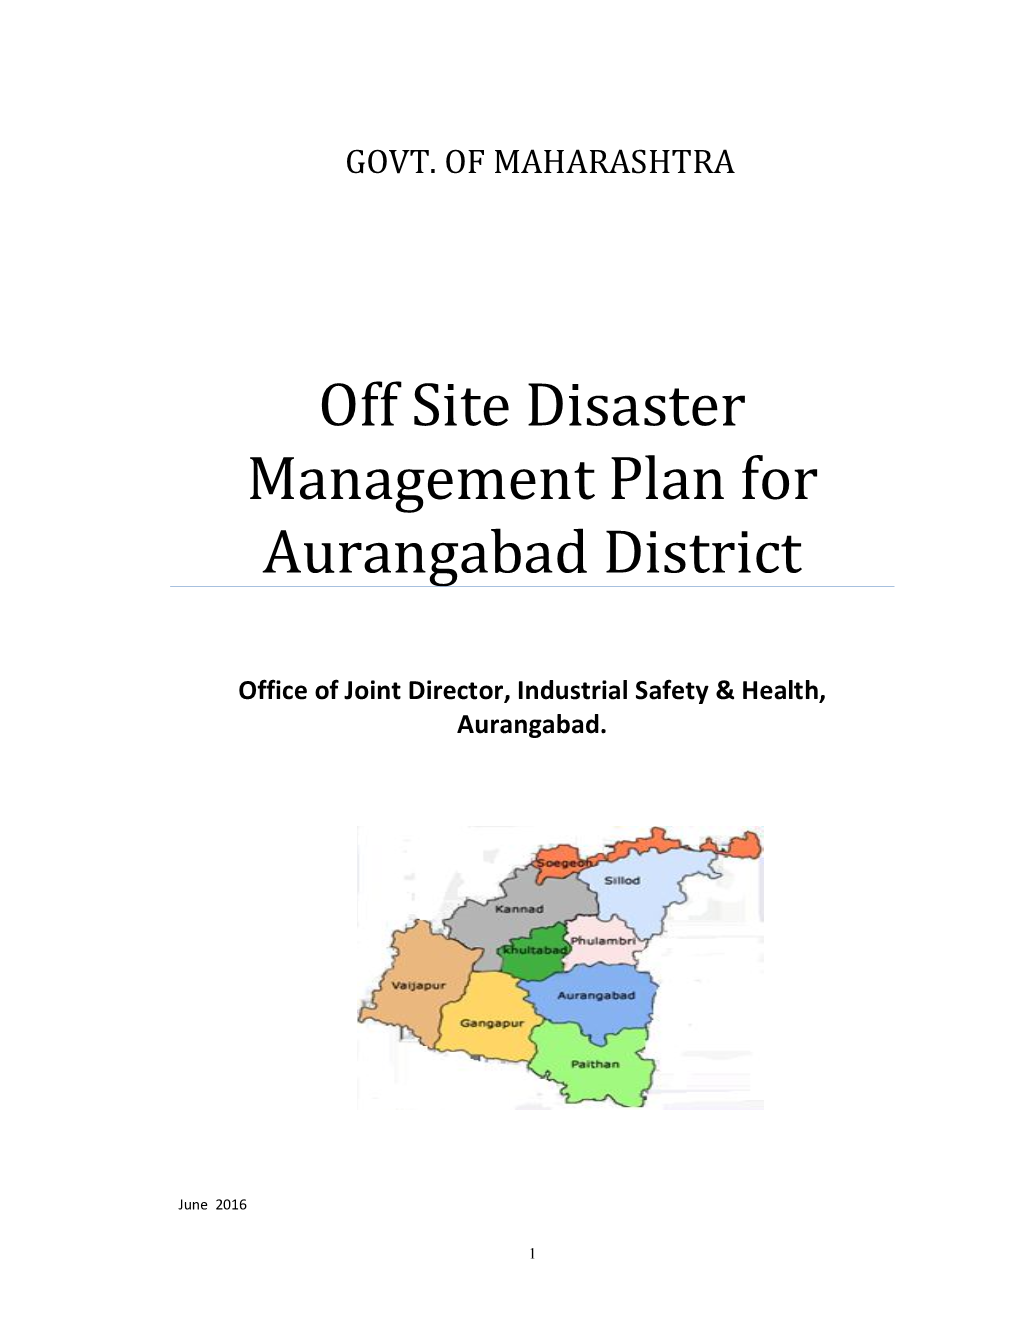 Off Site Disaster Management Plan for Aurangabad District